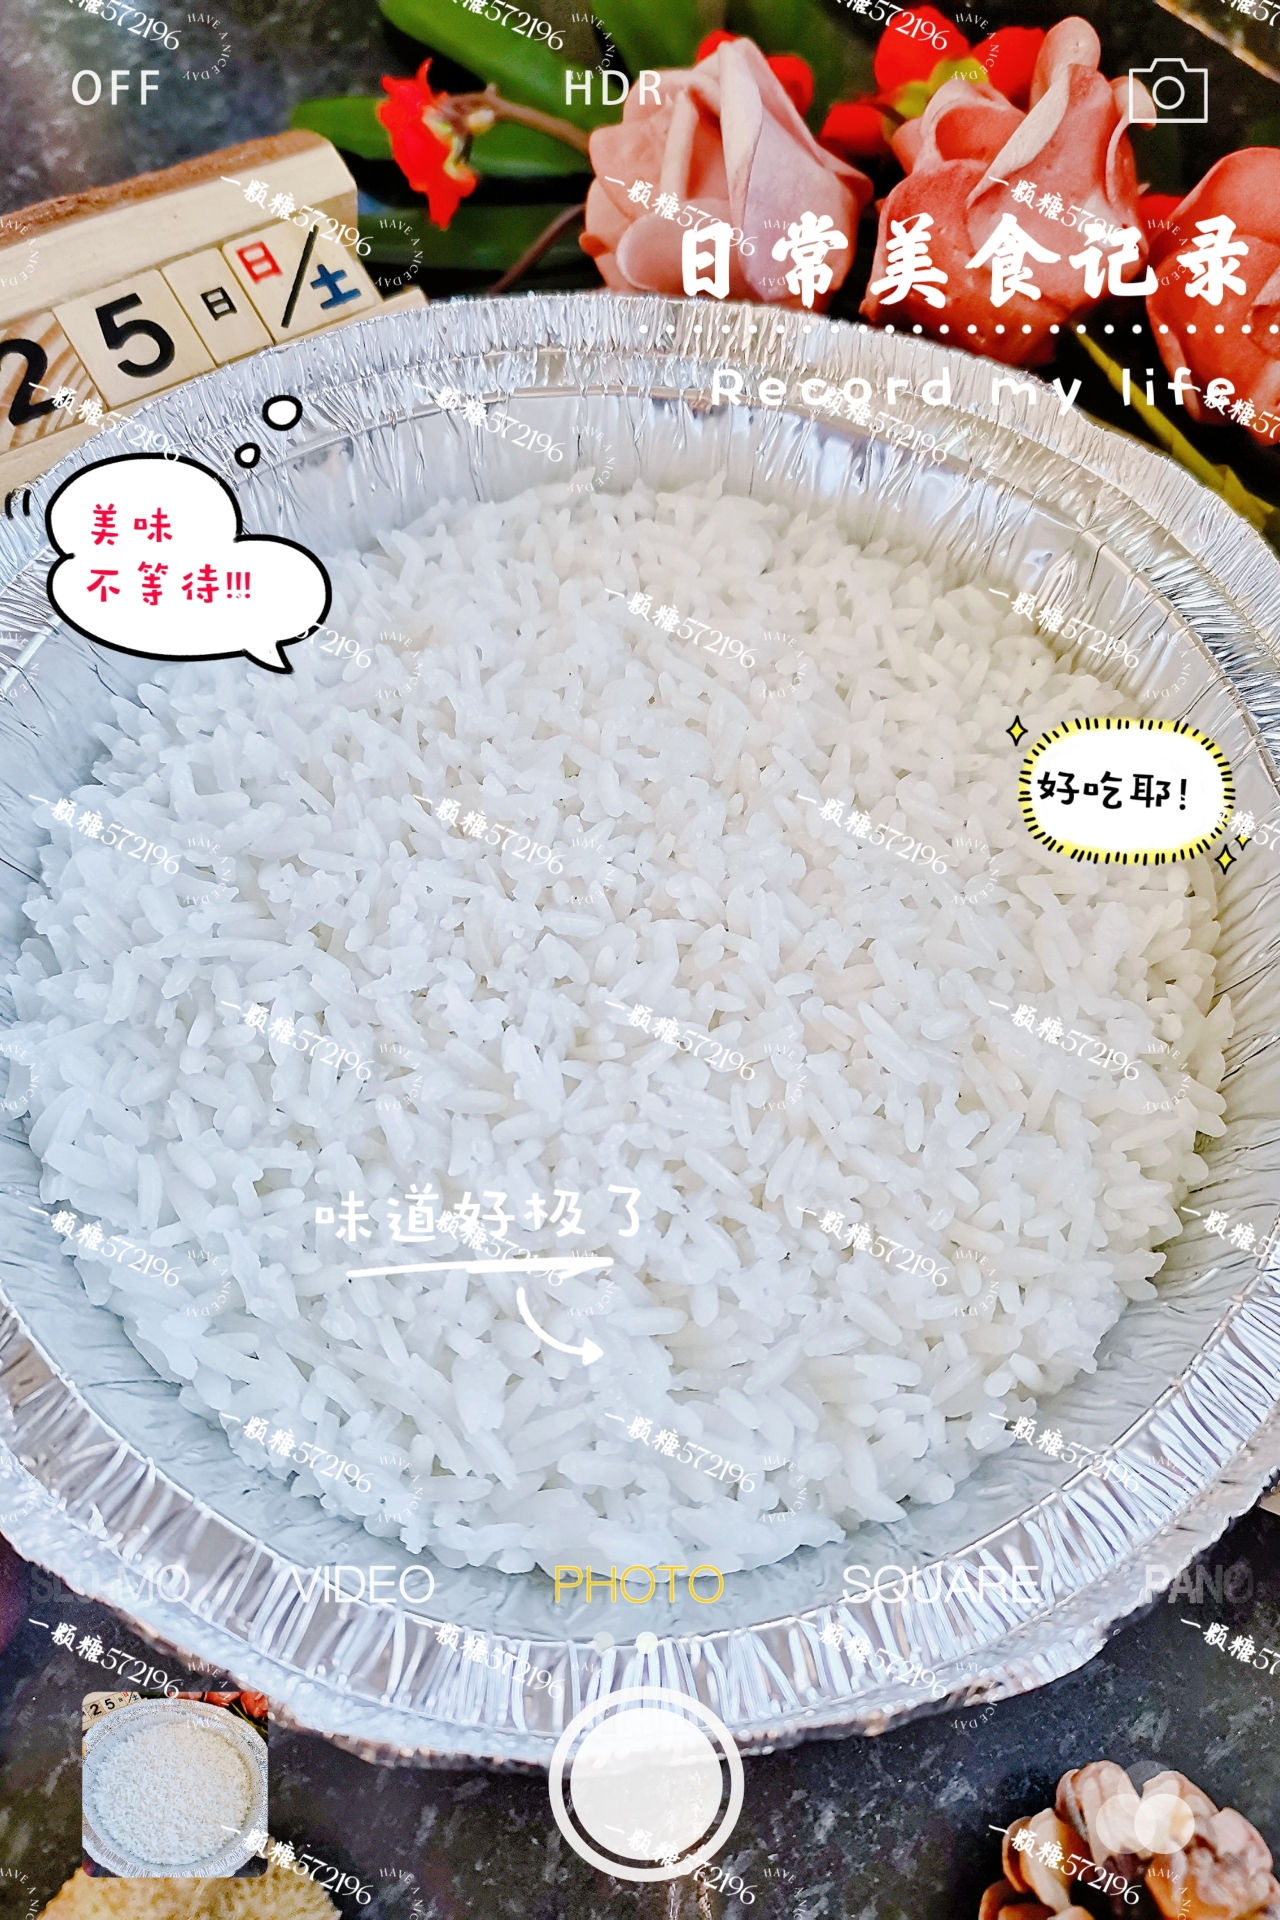 空气炸锅也能༄「蒸白米饭🍚」༄✌️✌️✌️